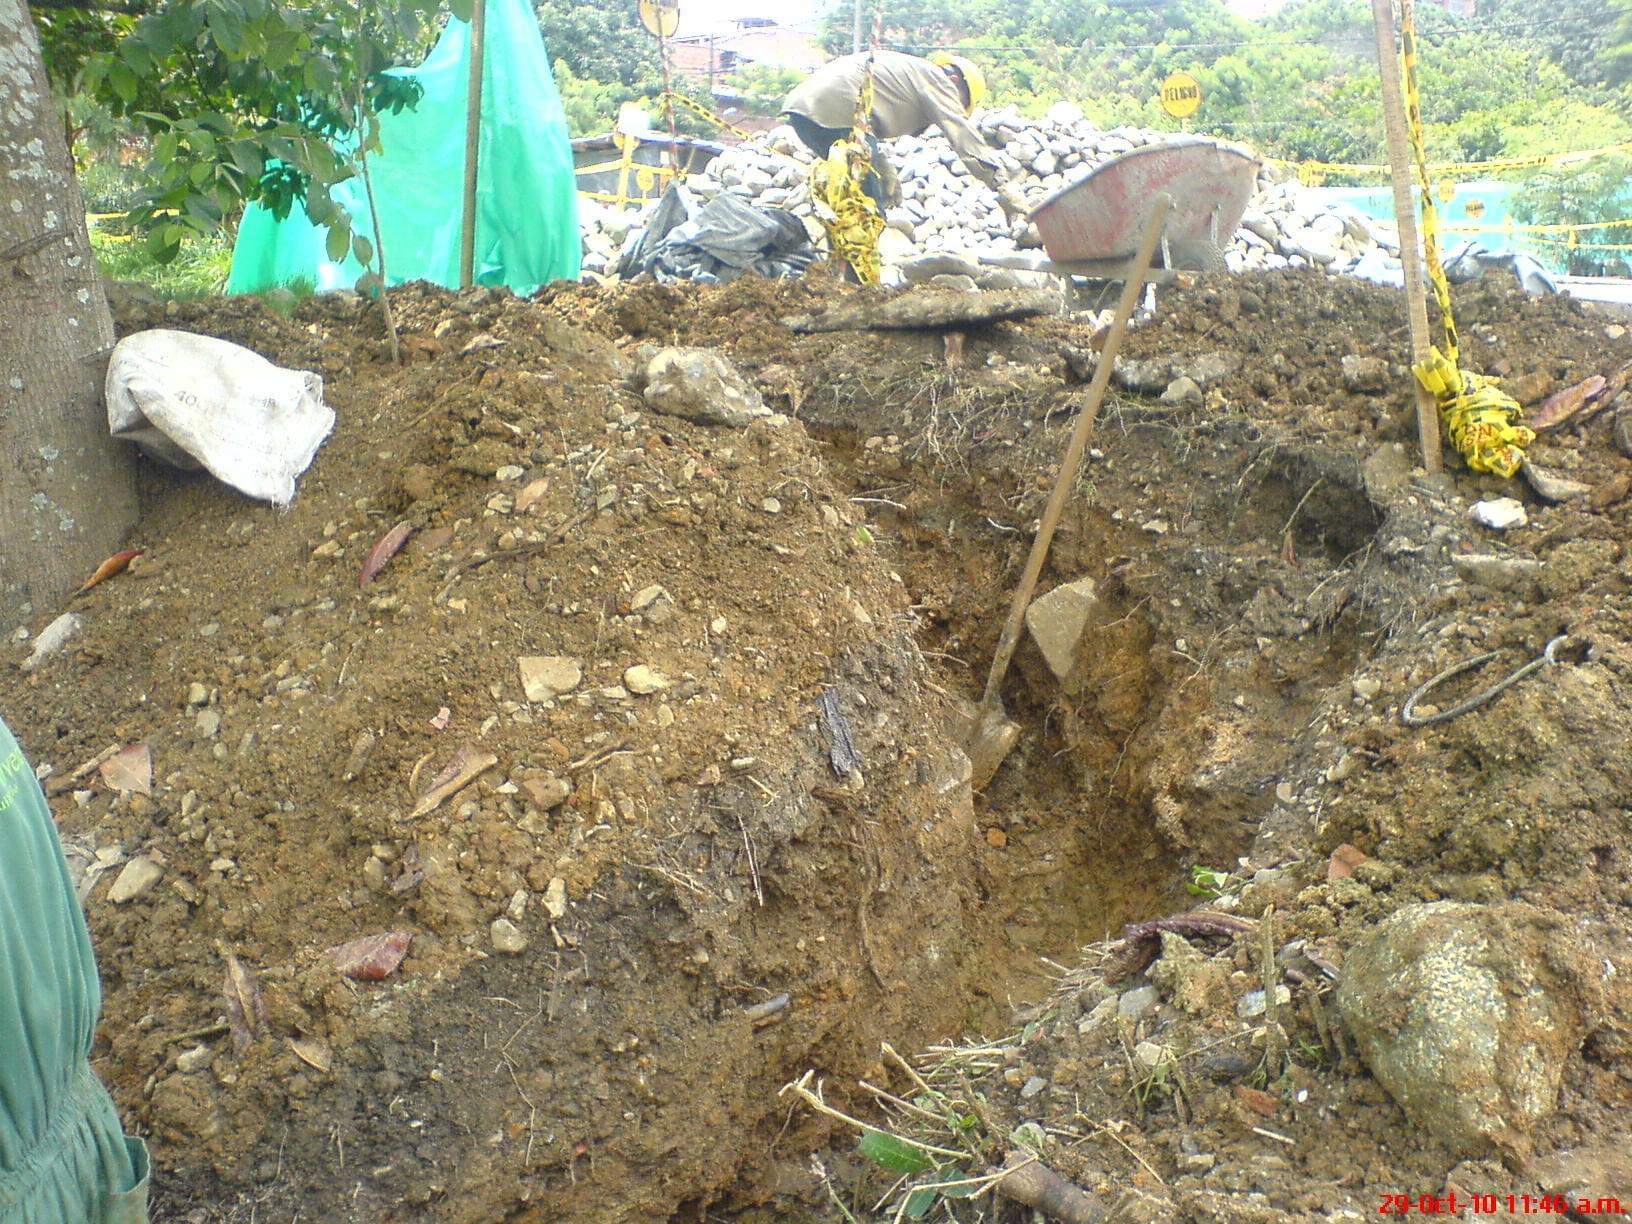 Renovación de tubería de alcantarillado por medio de excavaciones.